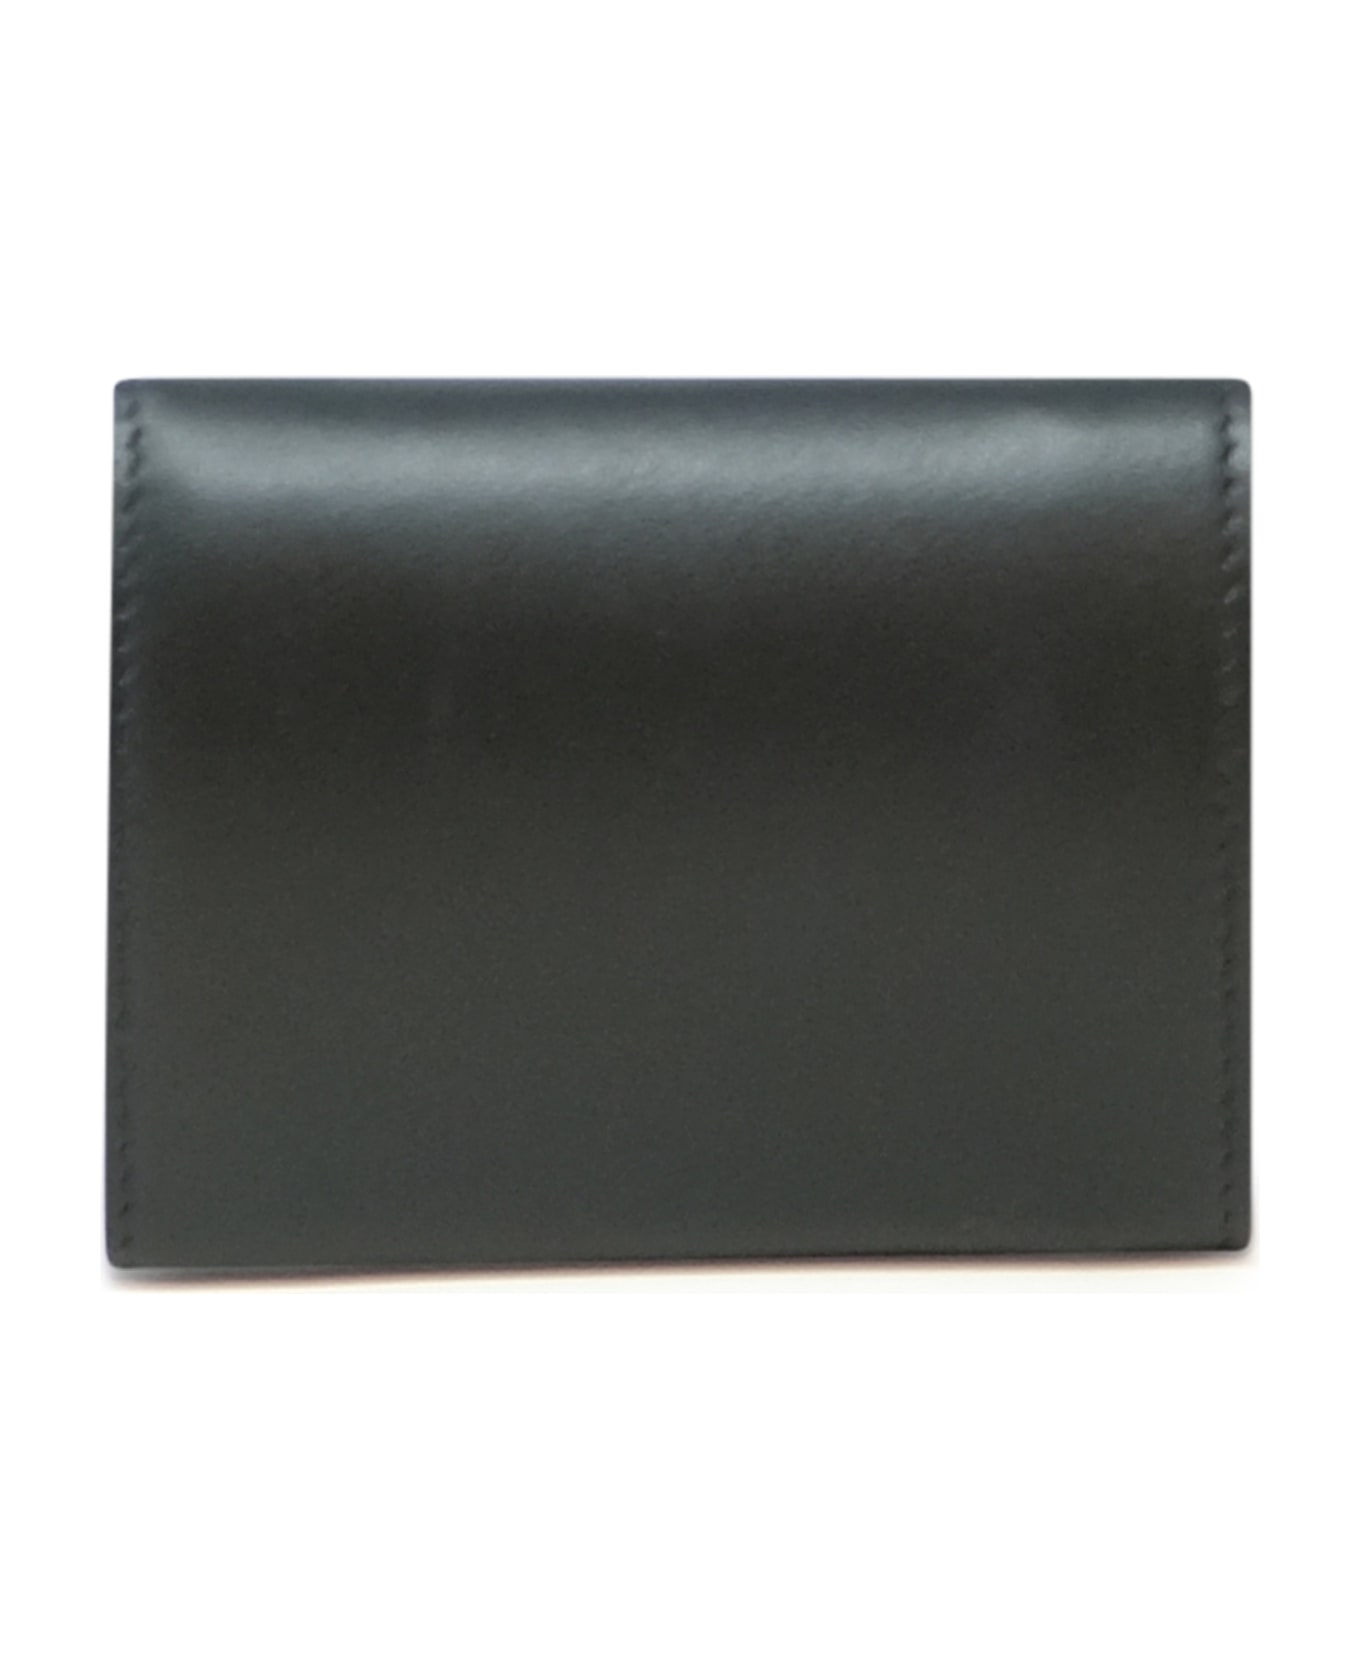 Christian Louboutin Black Leather Loubi54 Wallet - Black